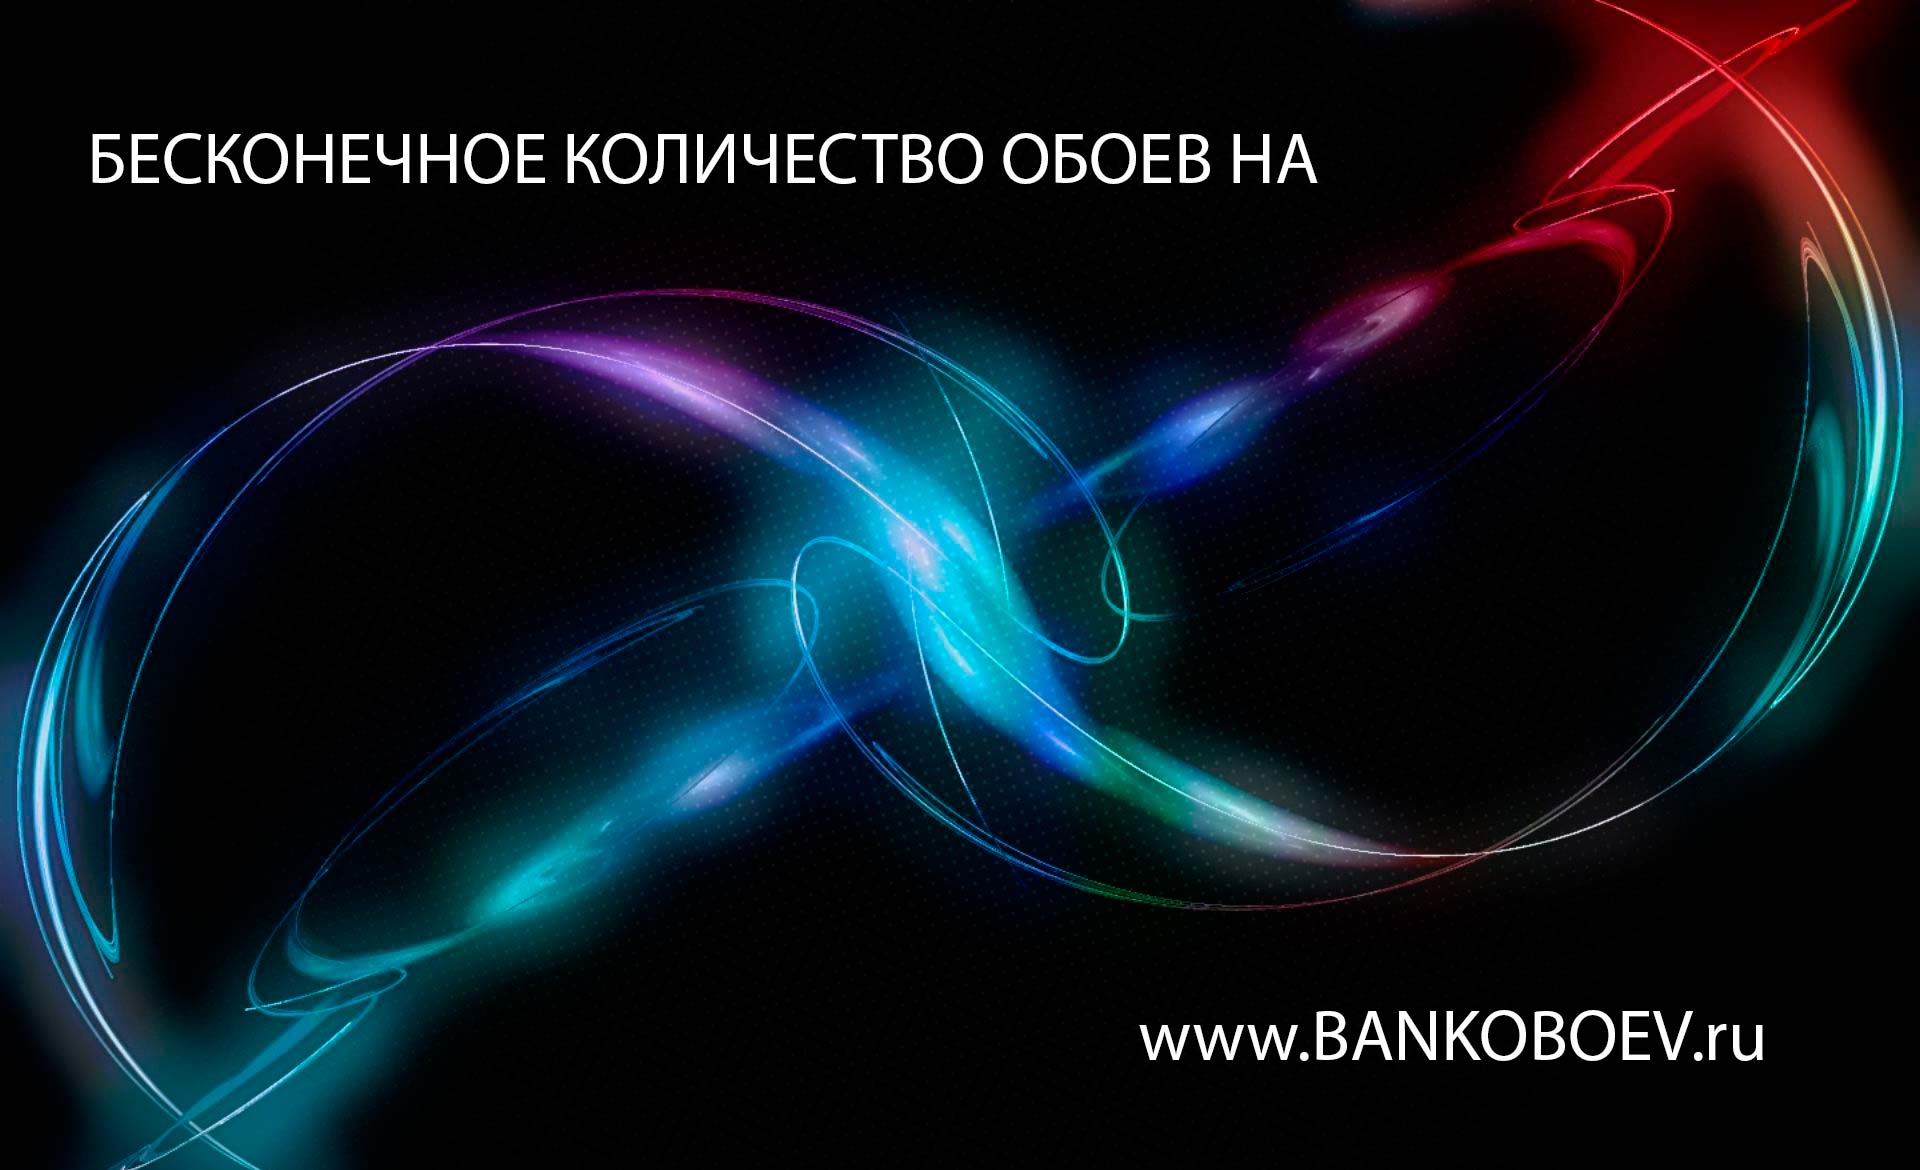 Bankoboev Ru Image Mtuxoty Jpg